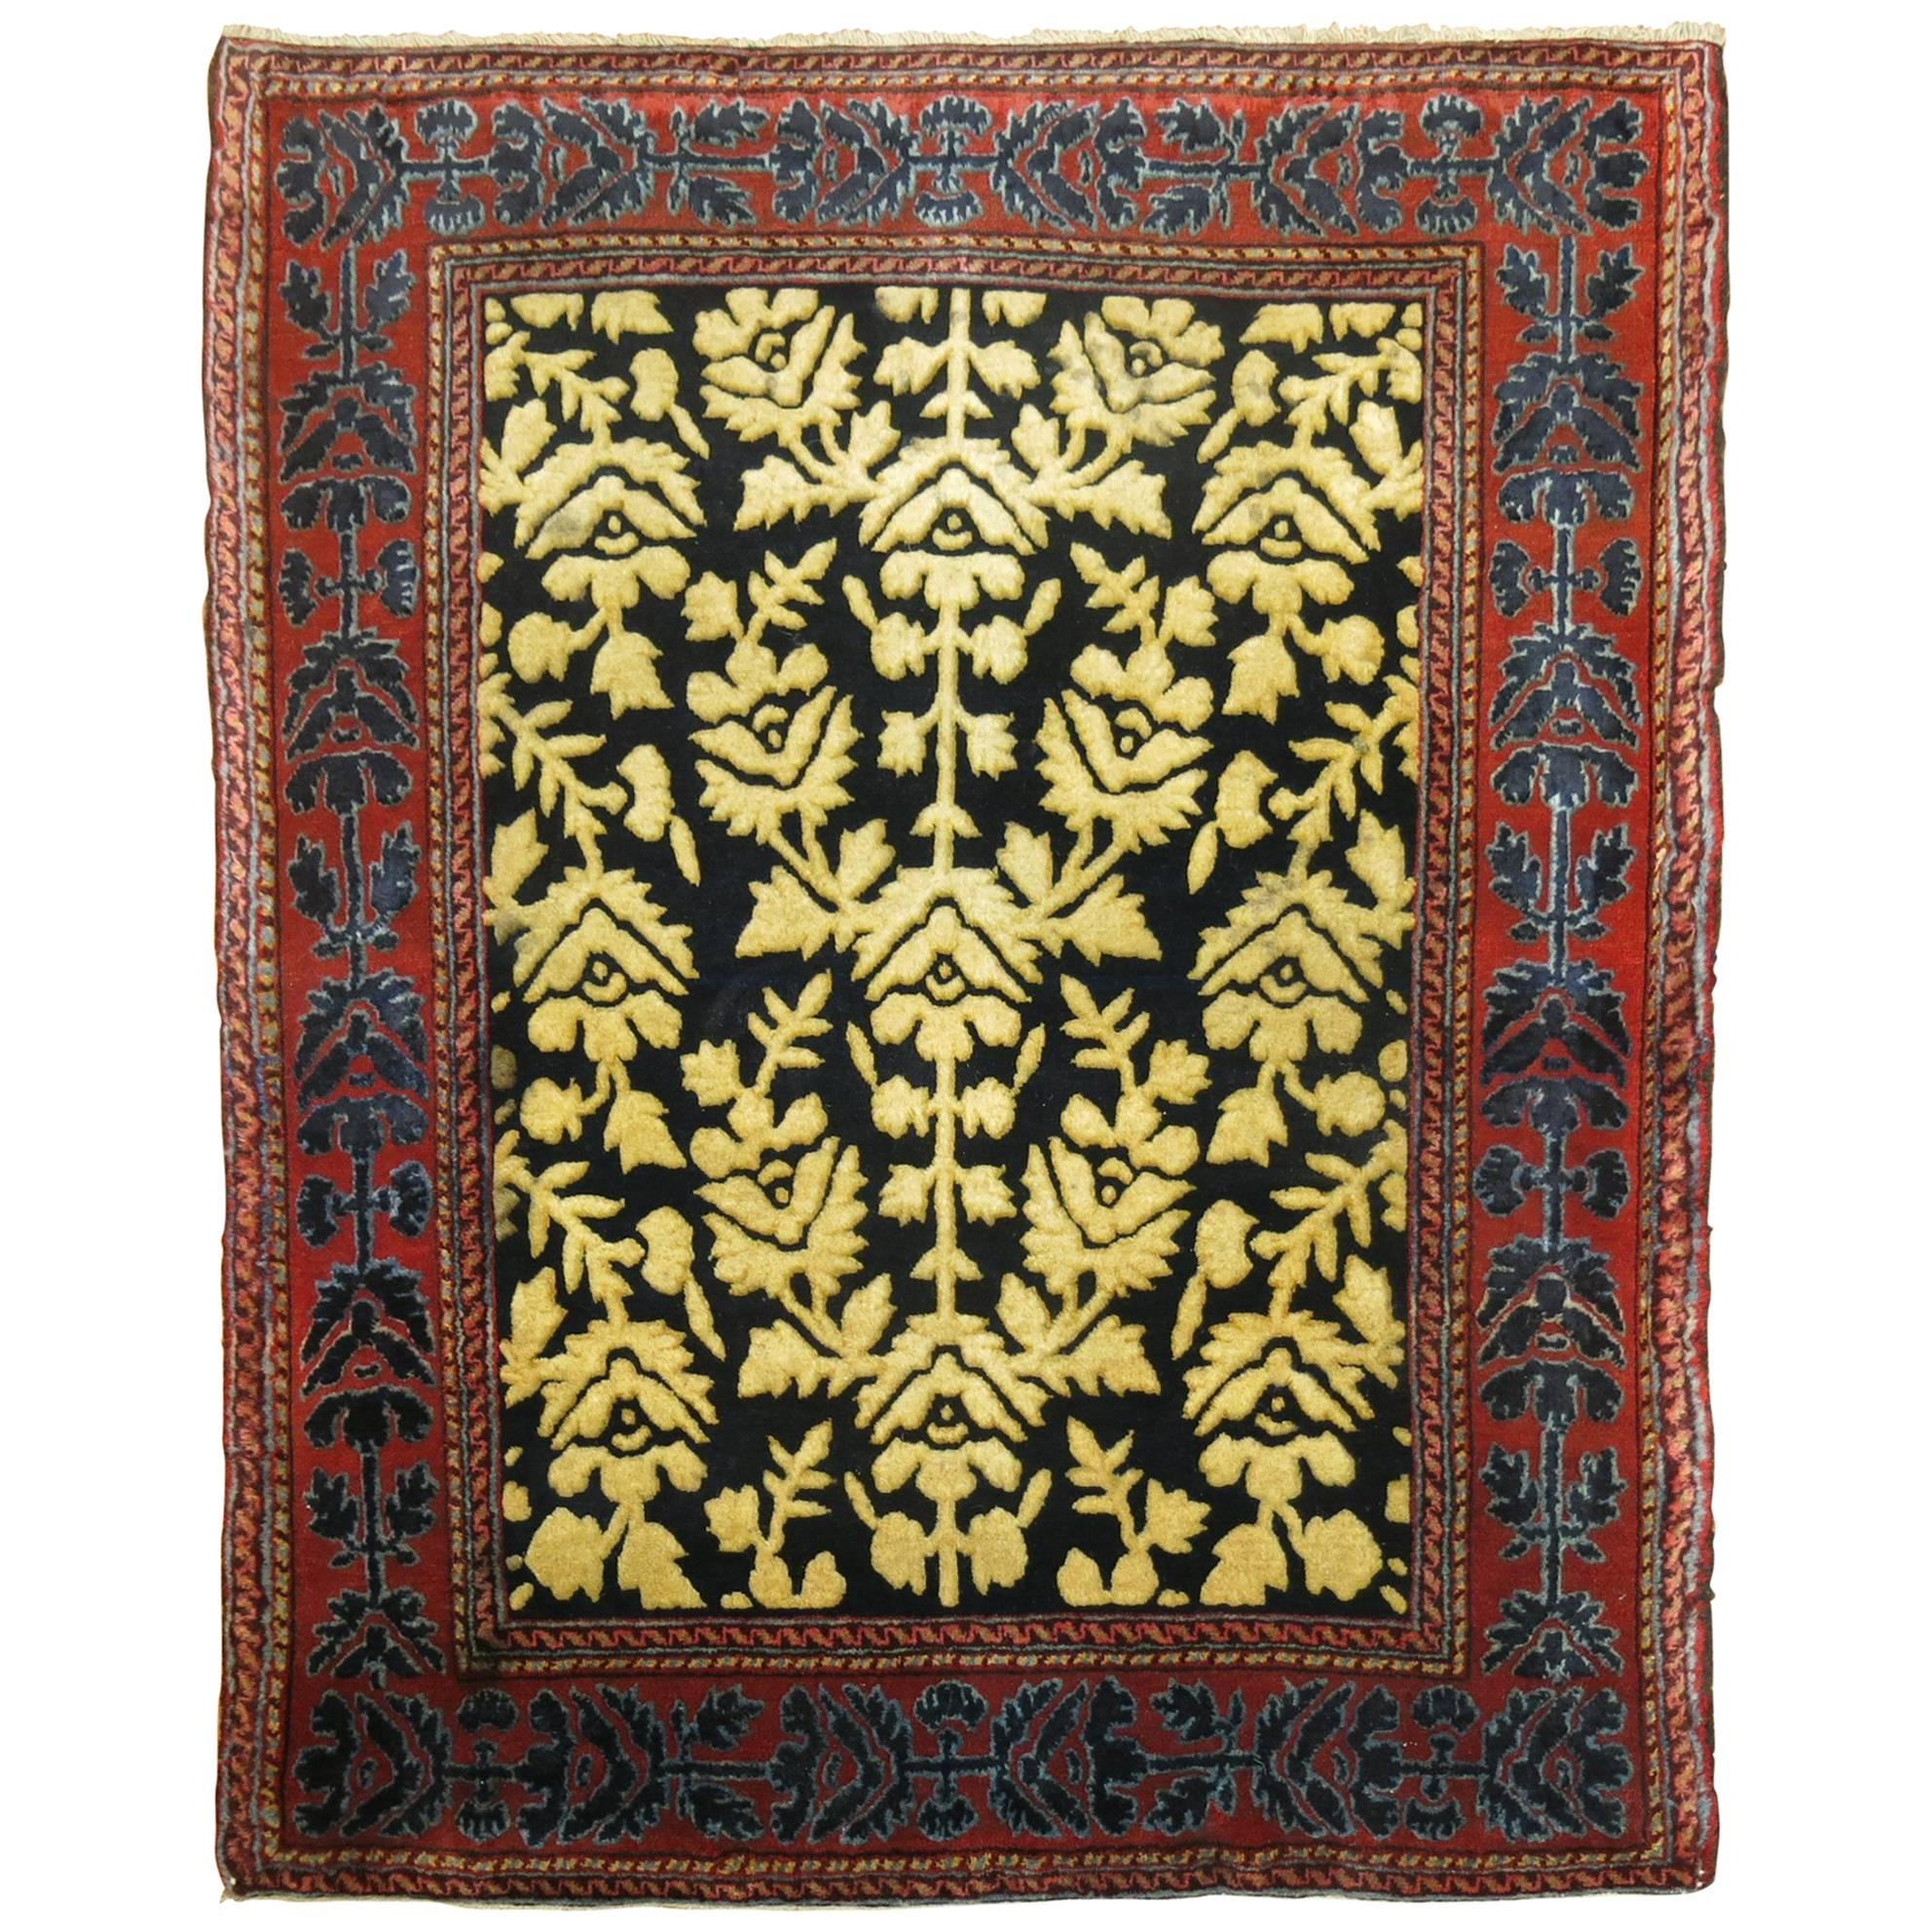 Antique Persian Souf Carpet